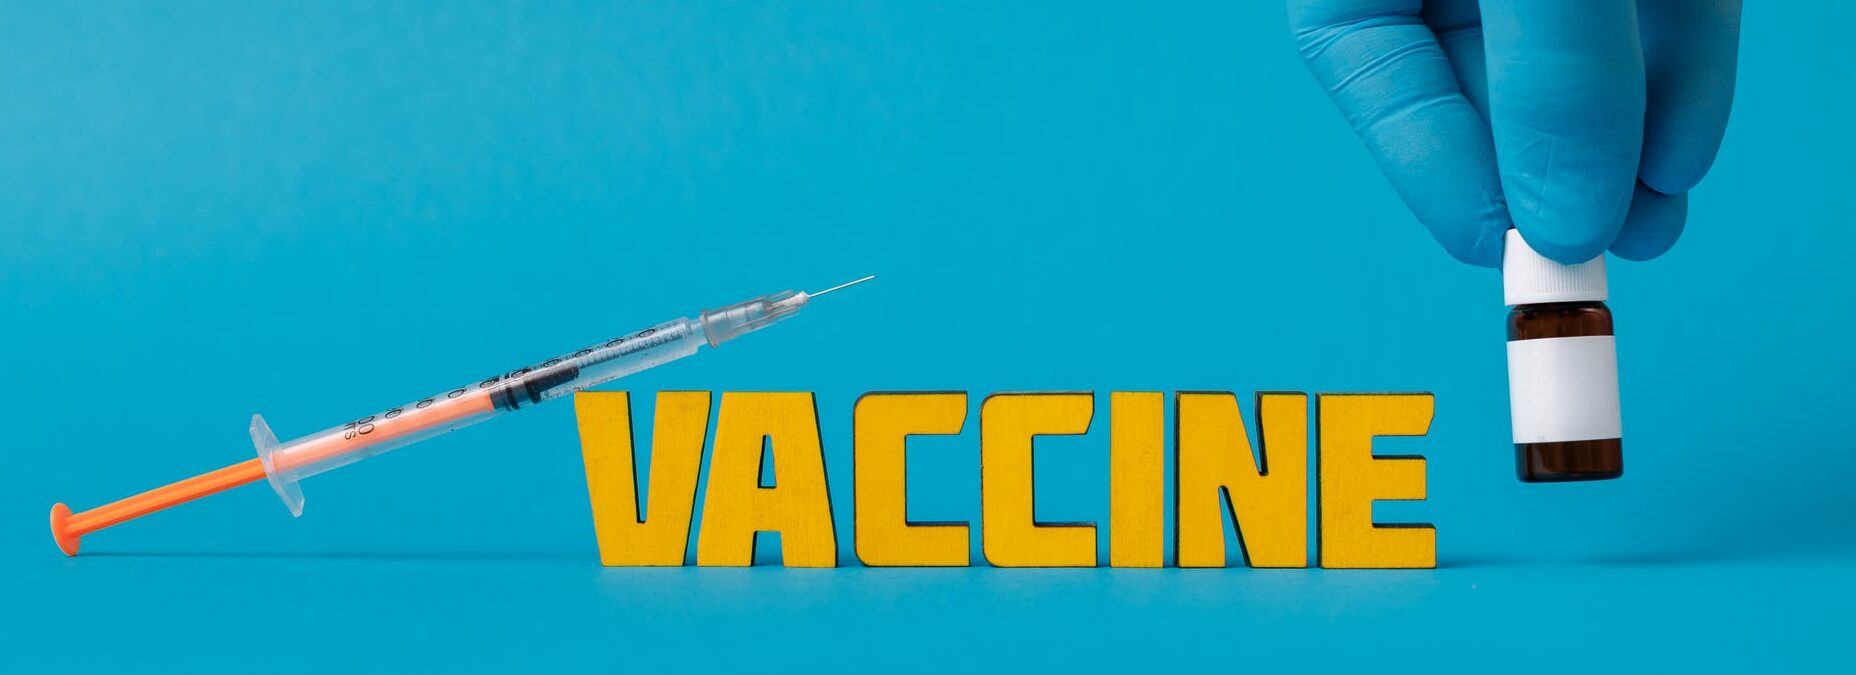 Нужна ли запорожцам справка о вакцинации для поездок за границу